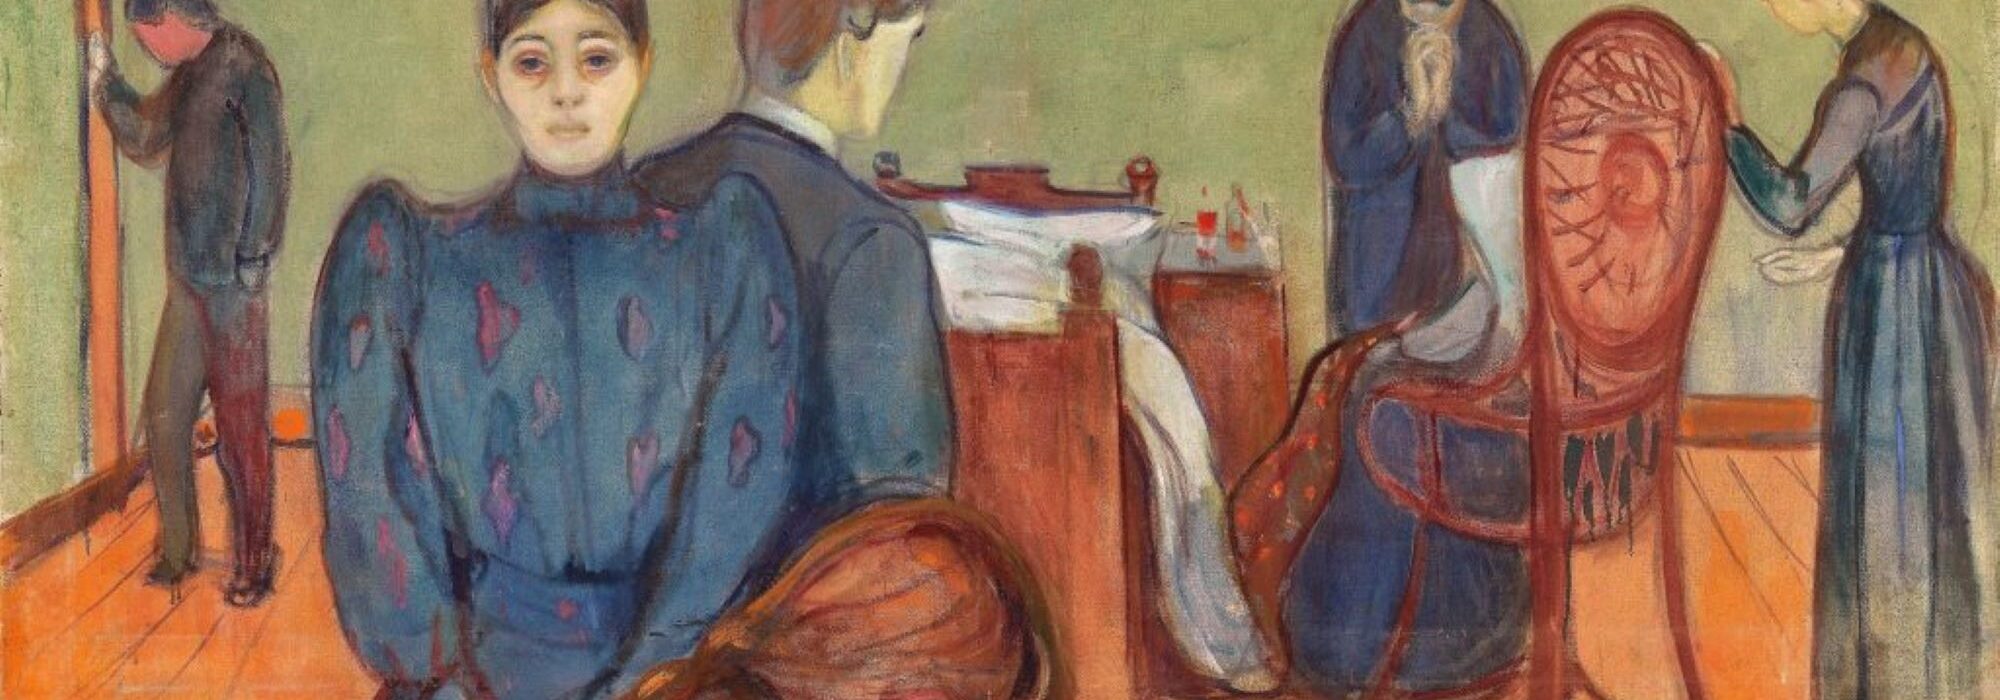 Imagem: Morte no Quarto do Paciente / Edvard Munch